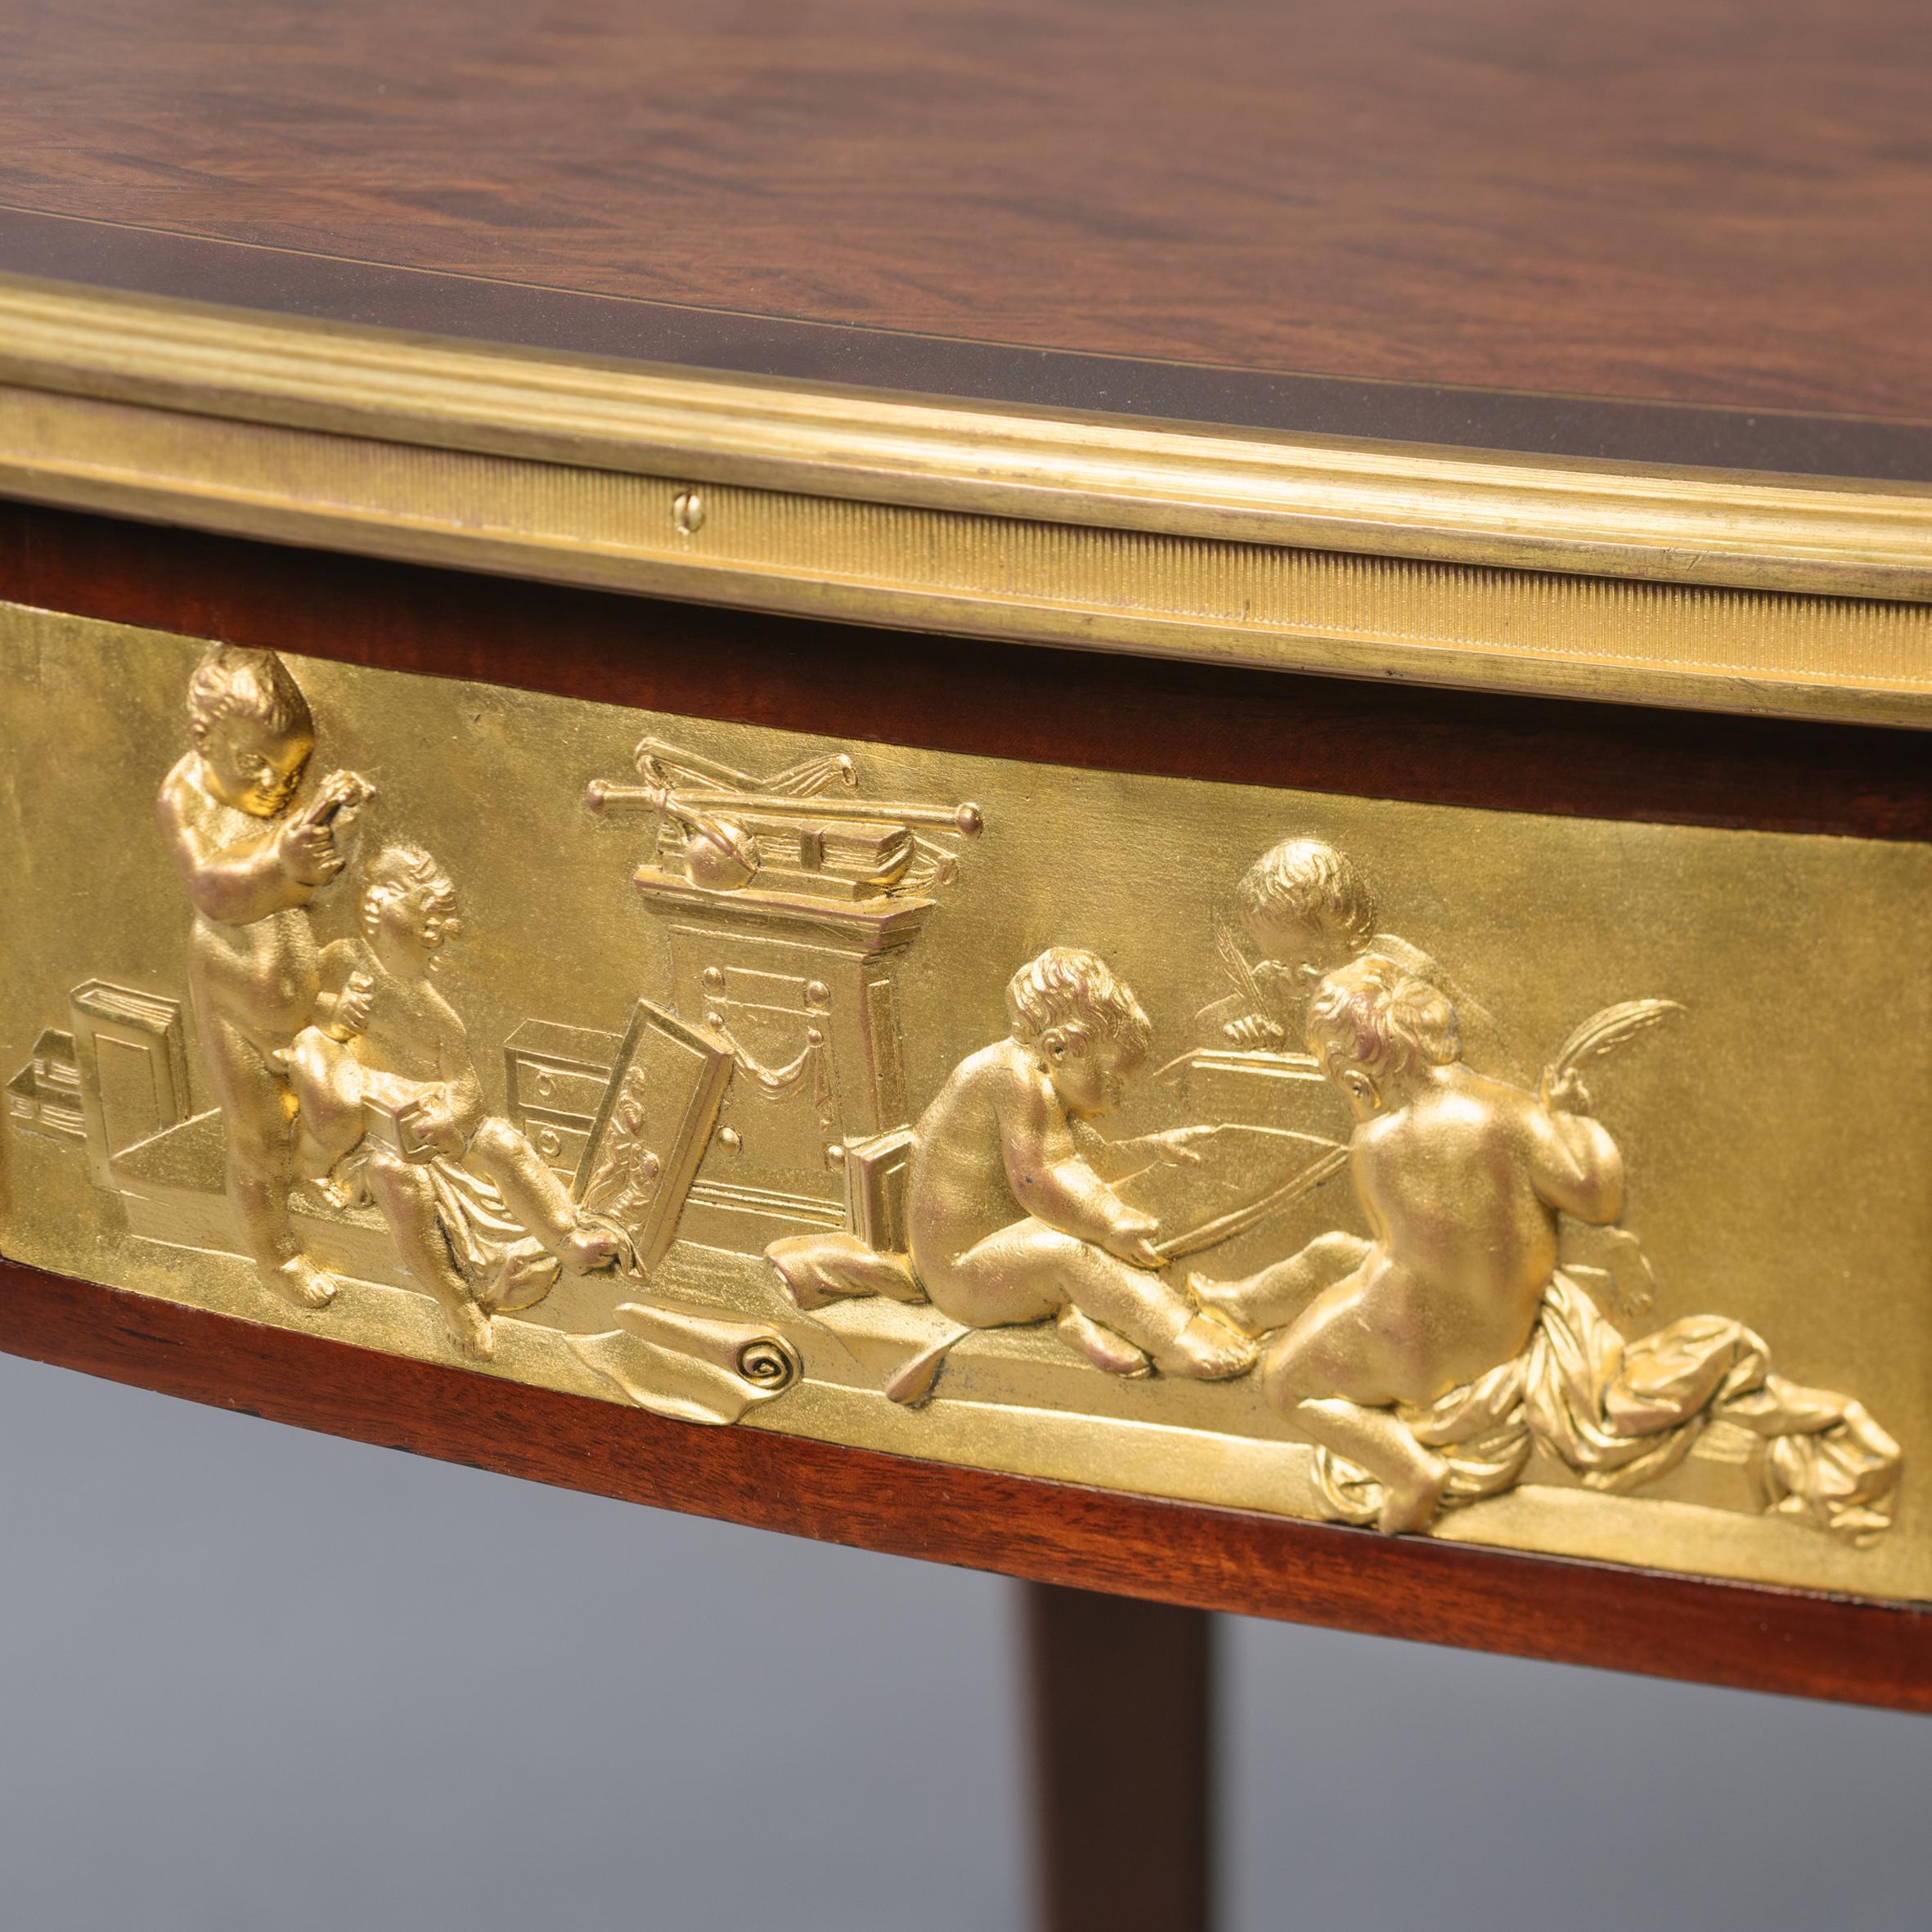 Ein feiner, in vergoldeter Bronze gefasster und mit Parkett eingelegter Mitteltisch im Stil Louis XVI von François Linke.

Signiert 'F. Linke